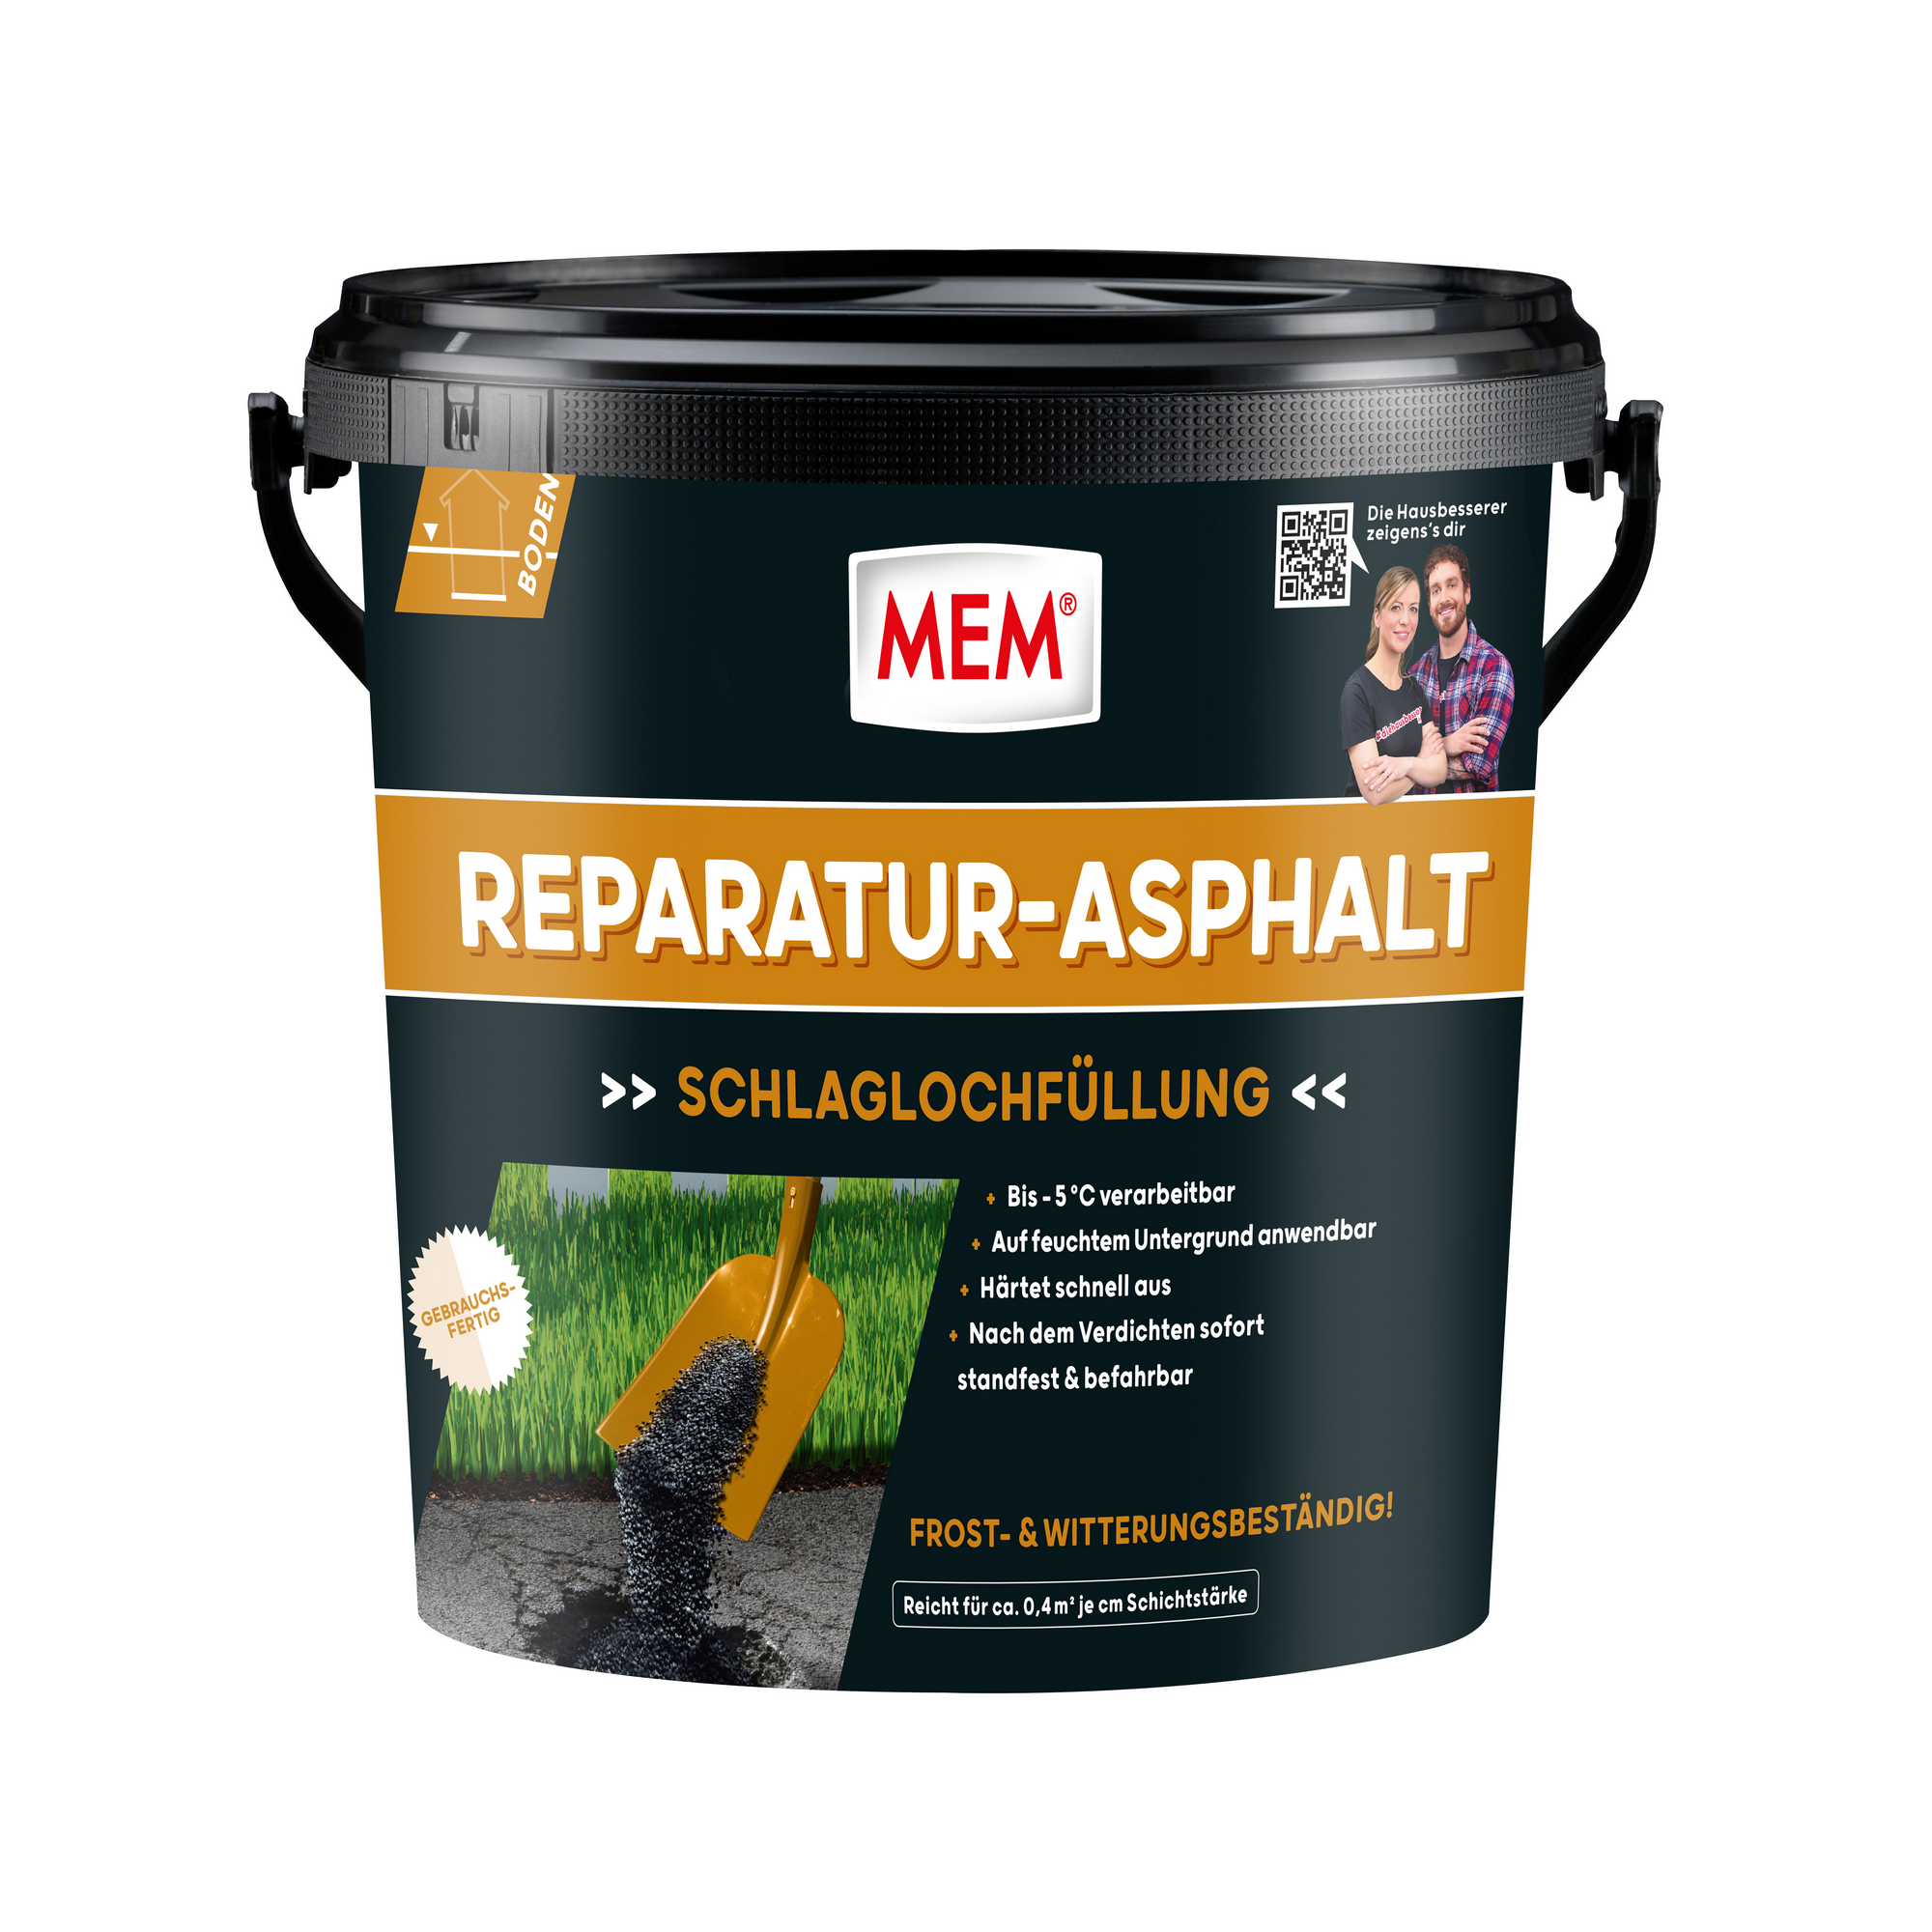 Reparatur-Asphalt 10 kg + product picture